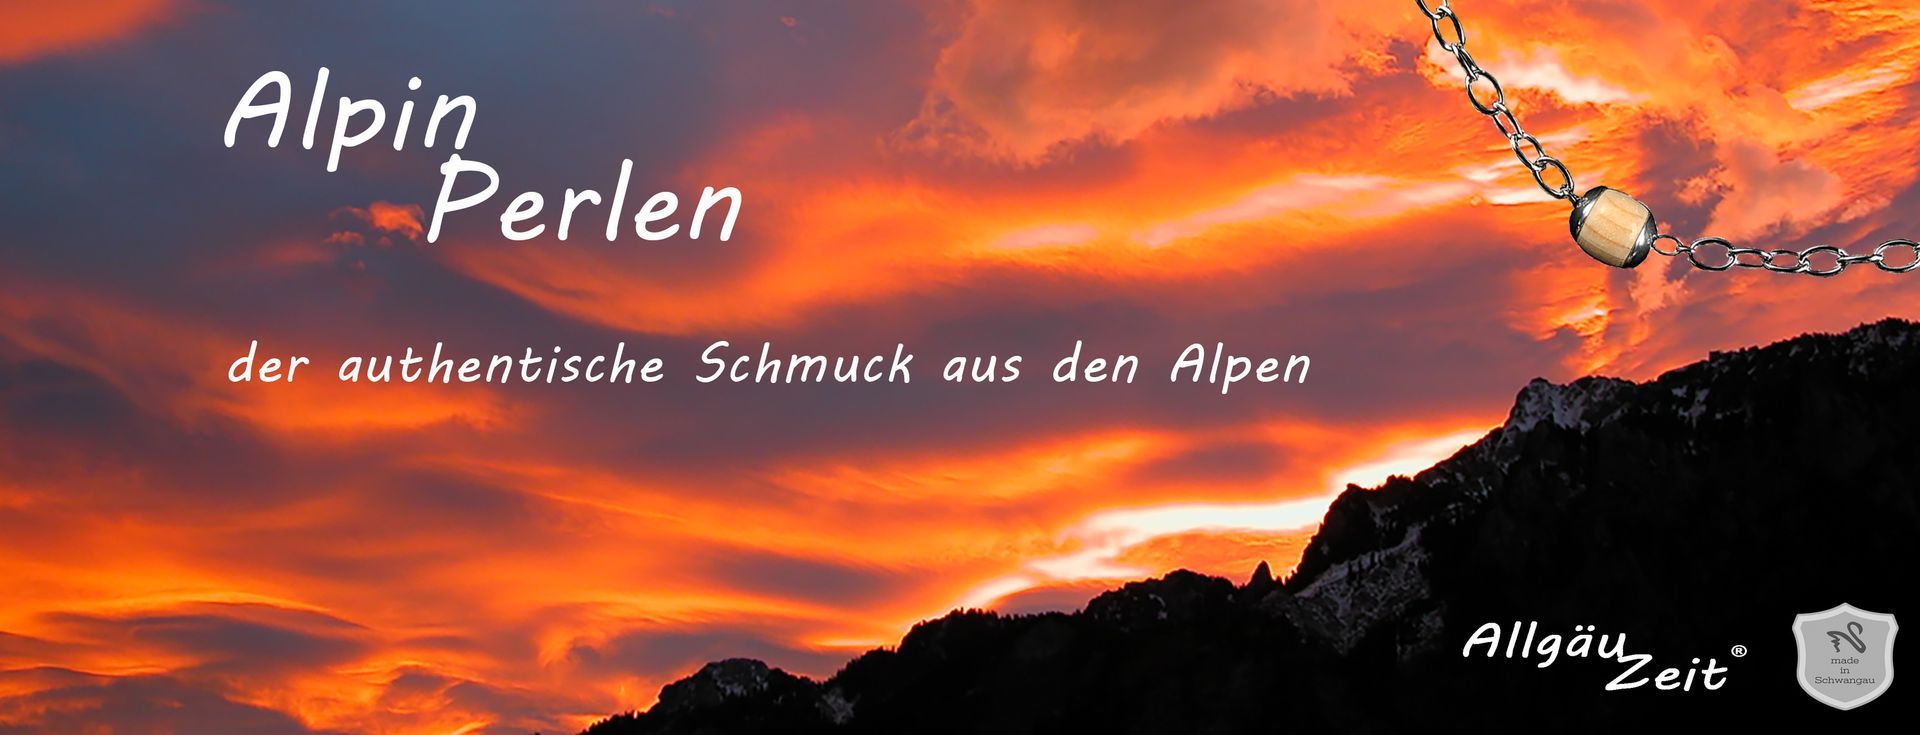 AlpinPerlen ... der authentische Schmuck aus den Alpen